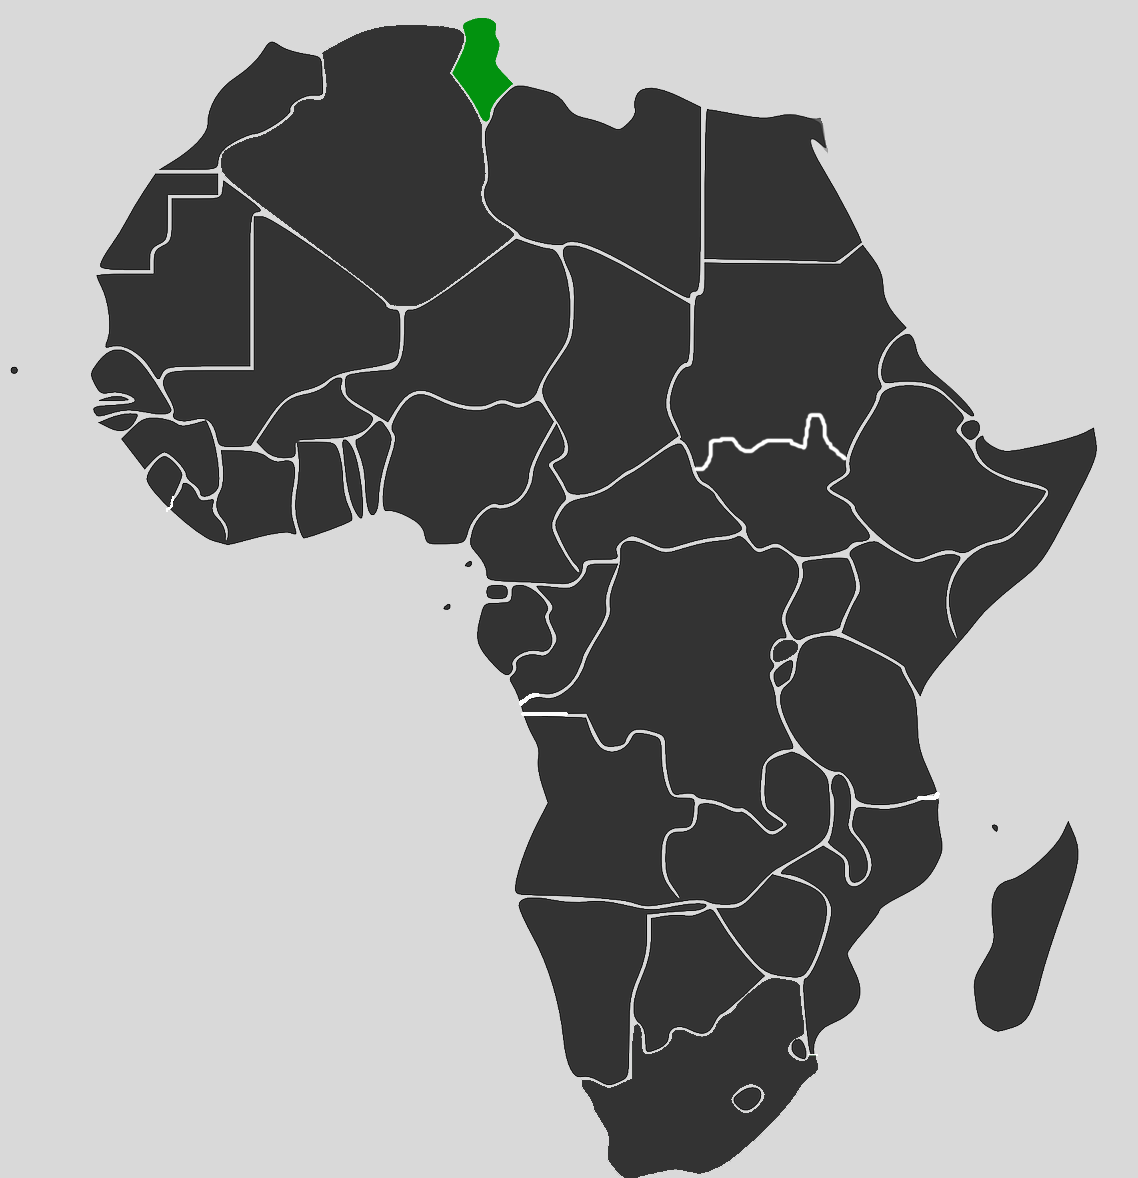 Africa Map - Tunisia